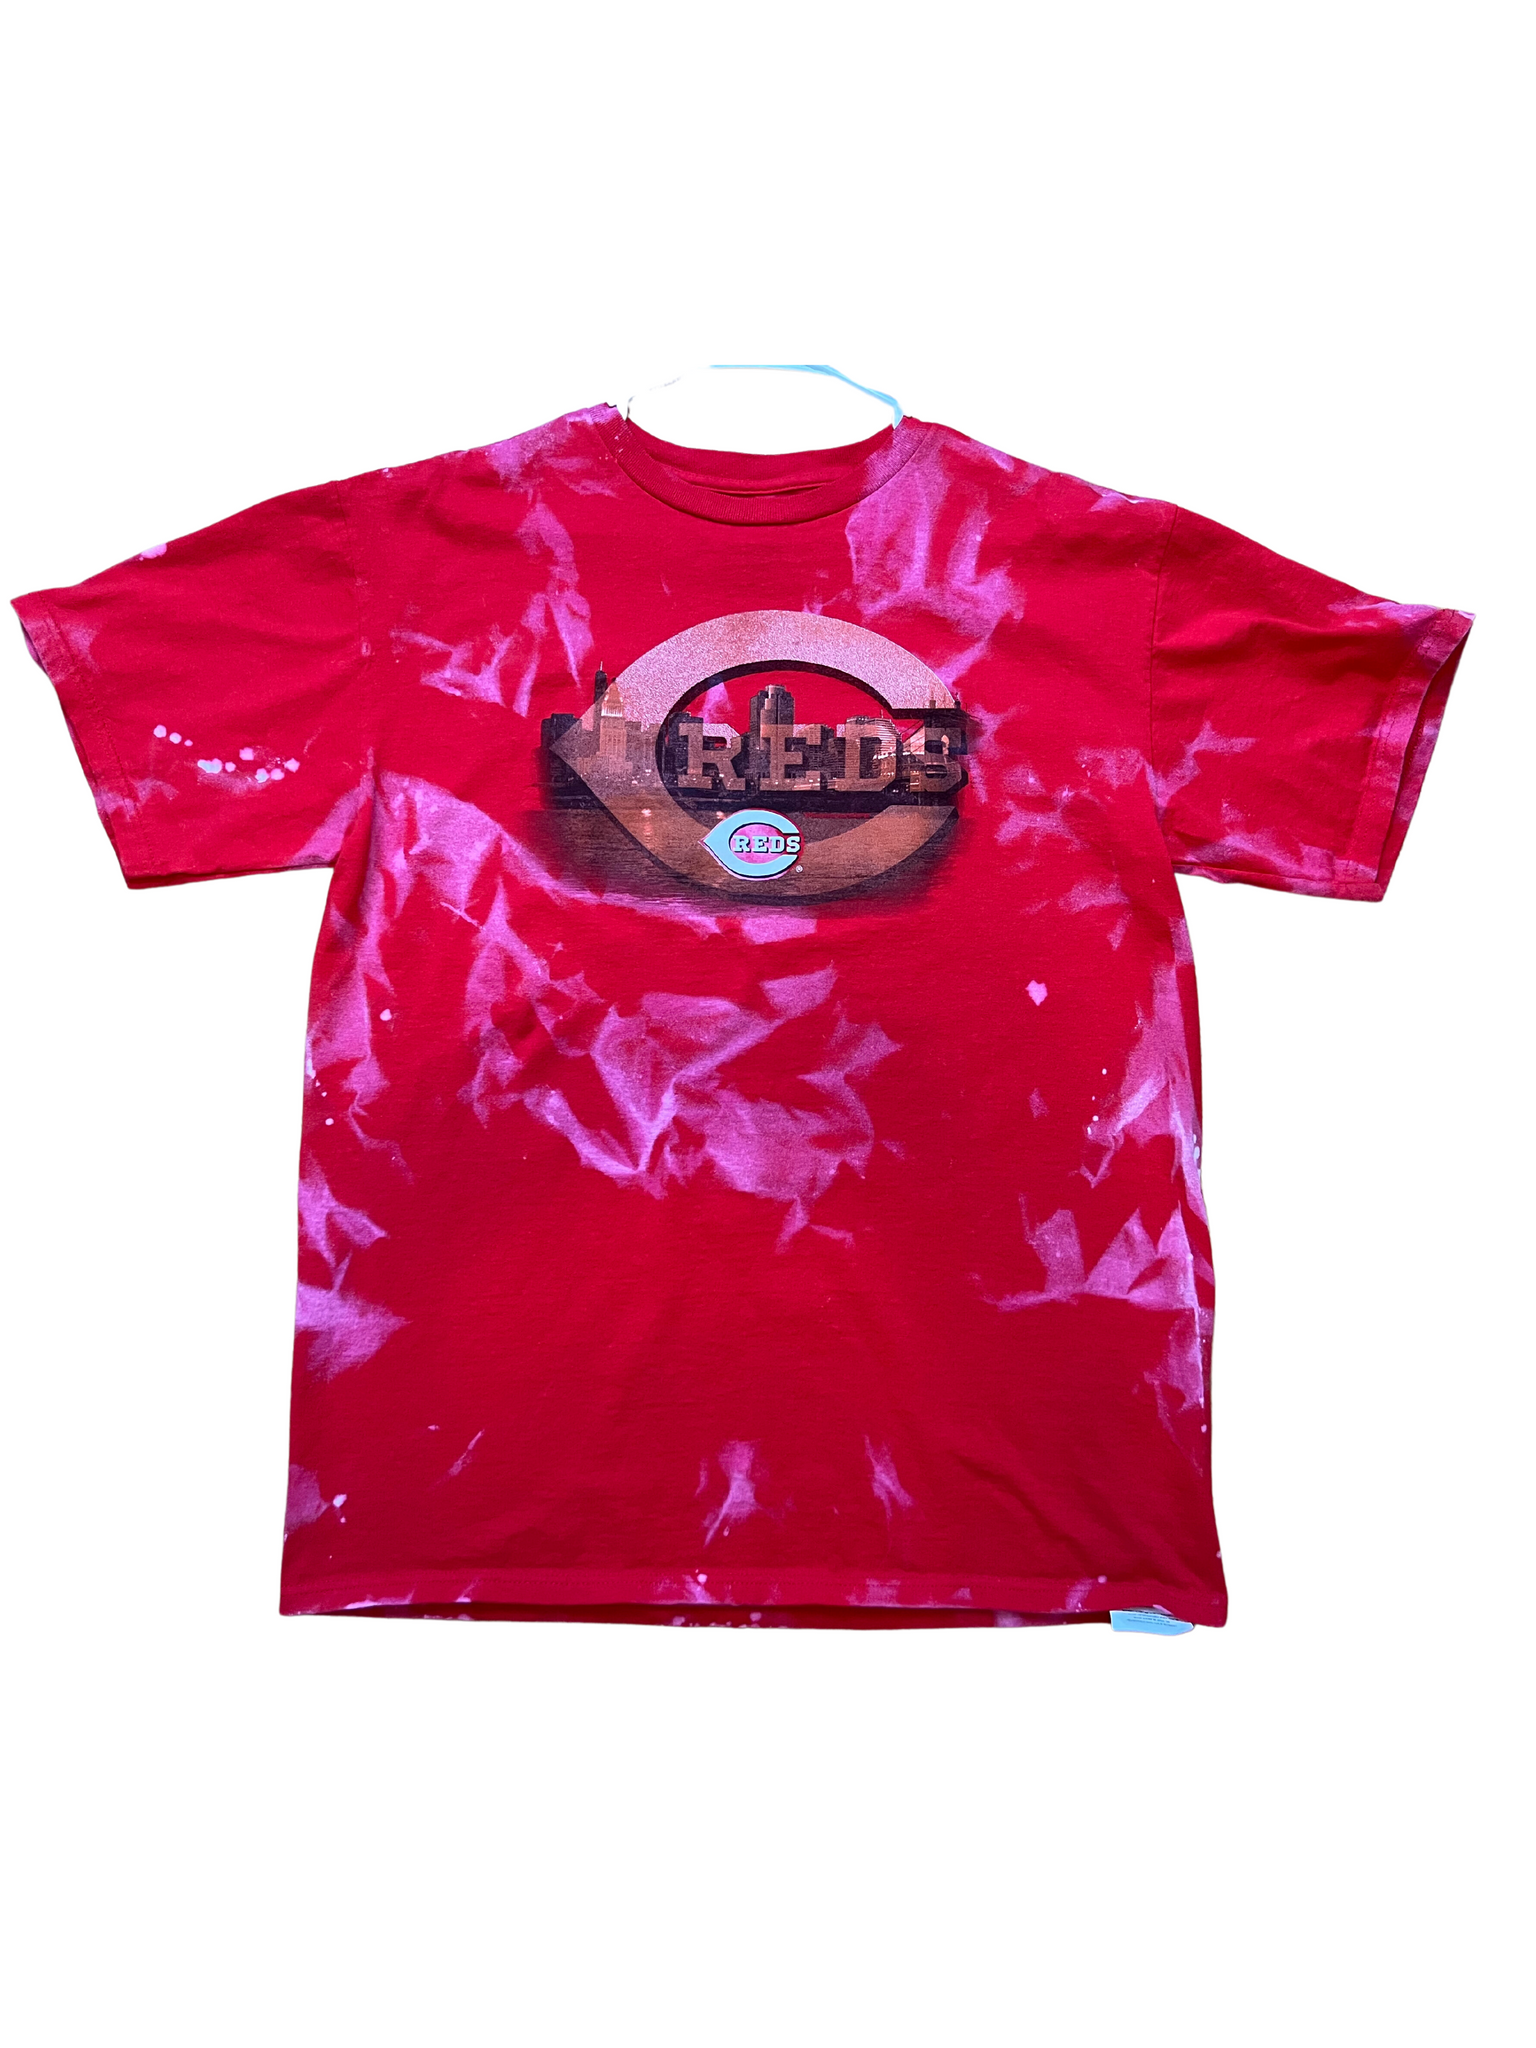 Cincinnati Reds Bleached Shirt